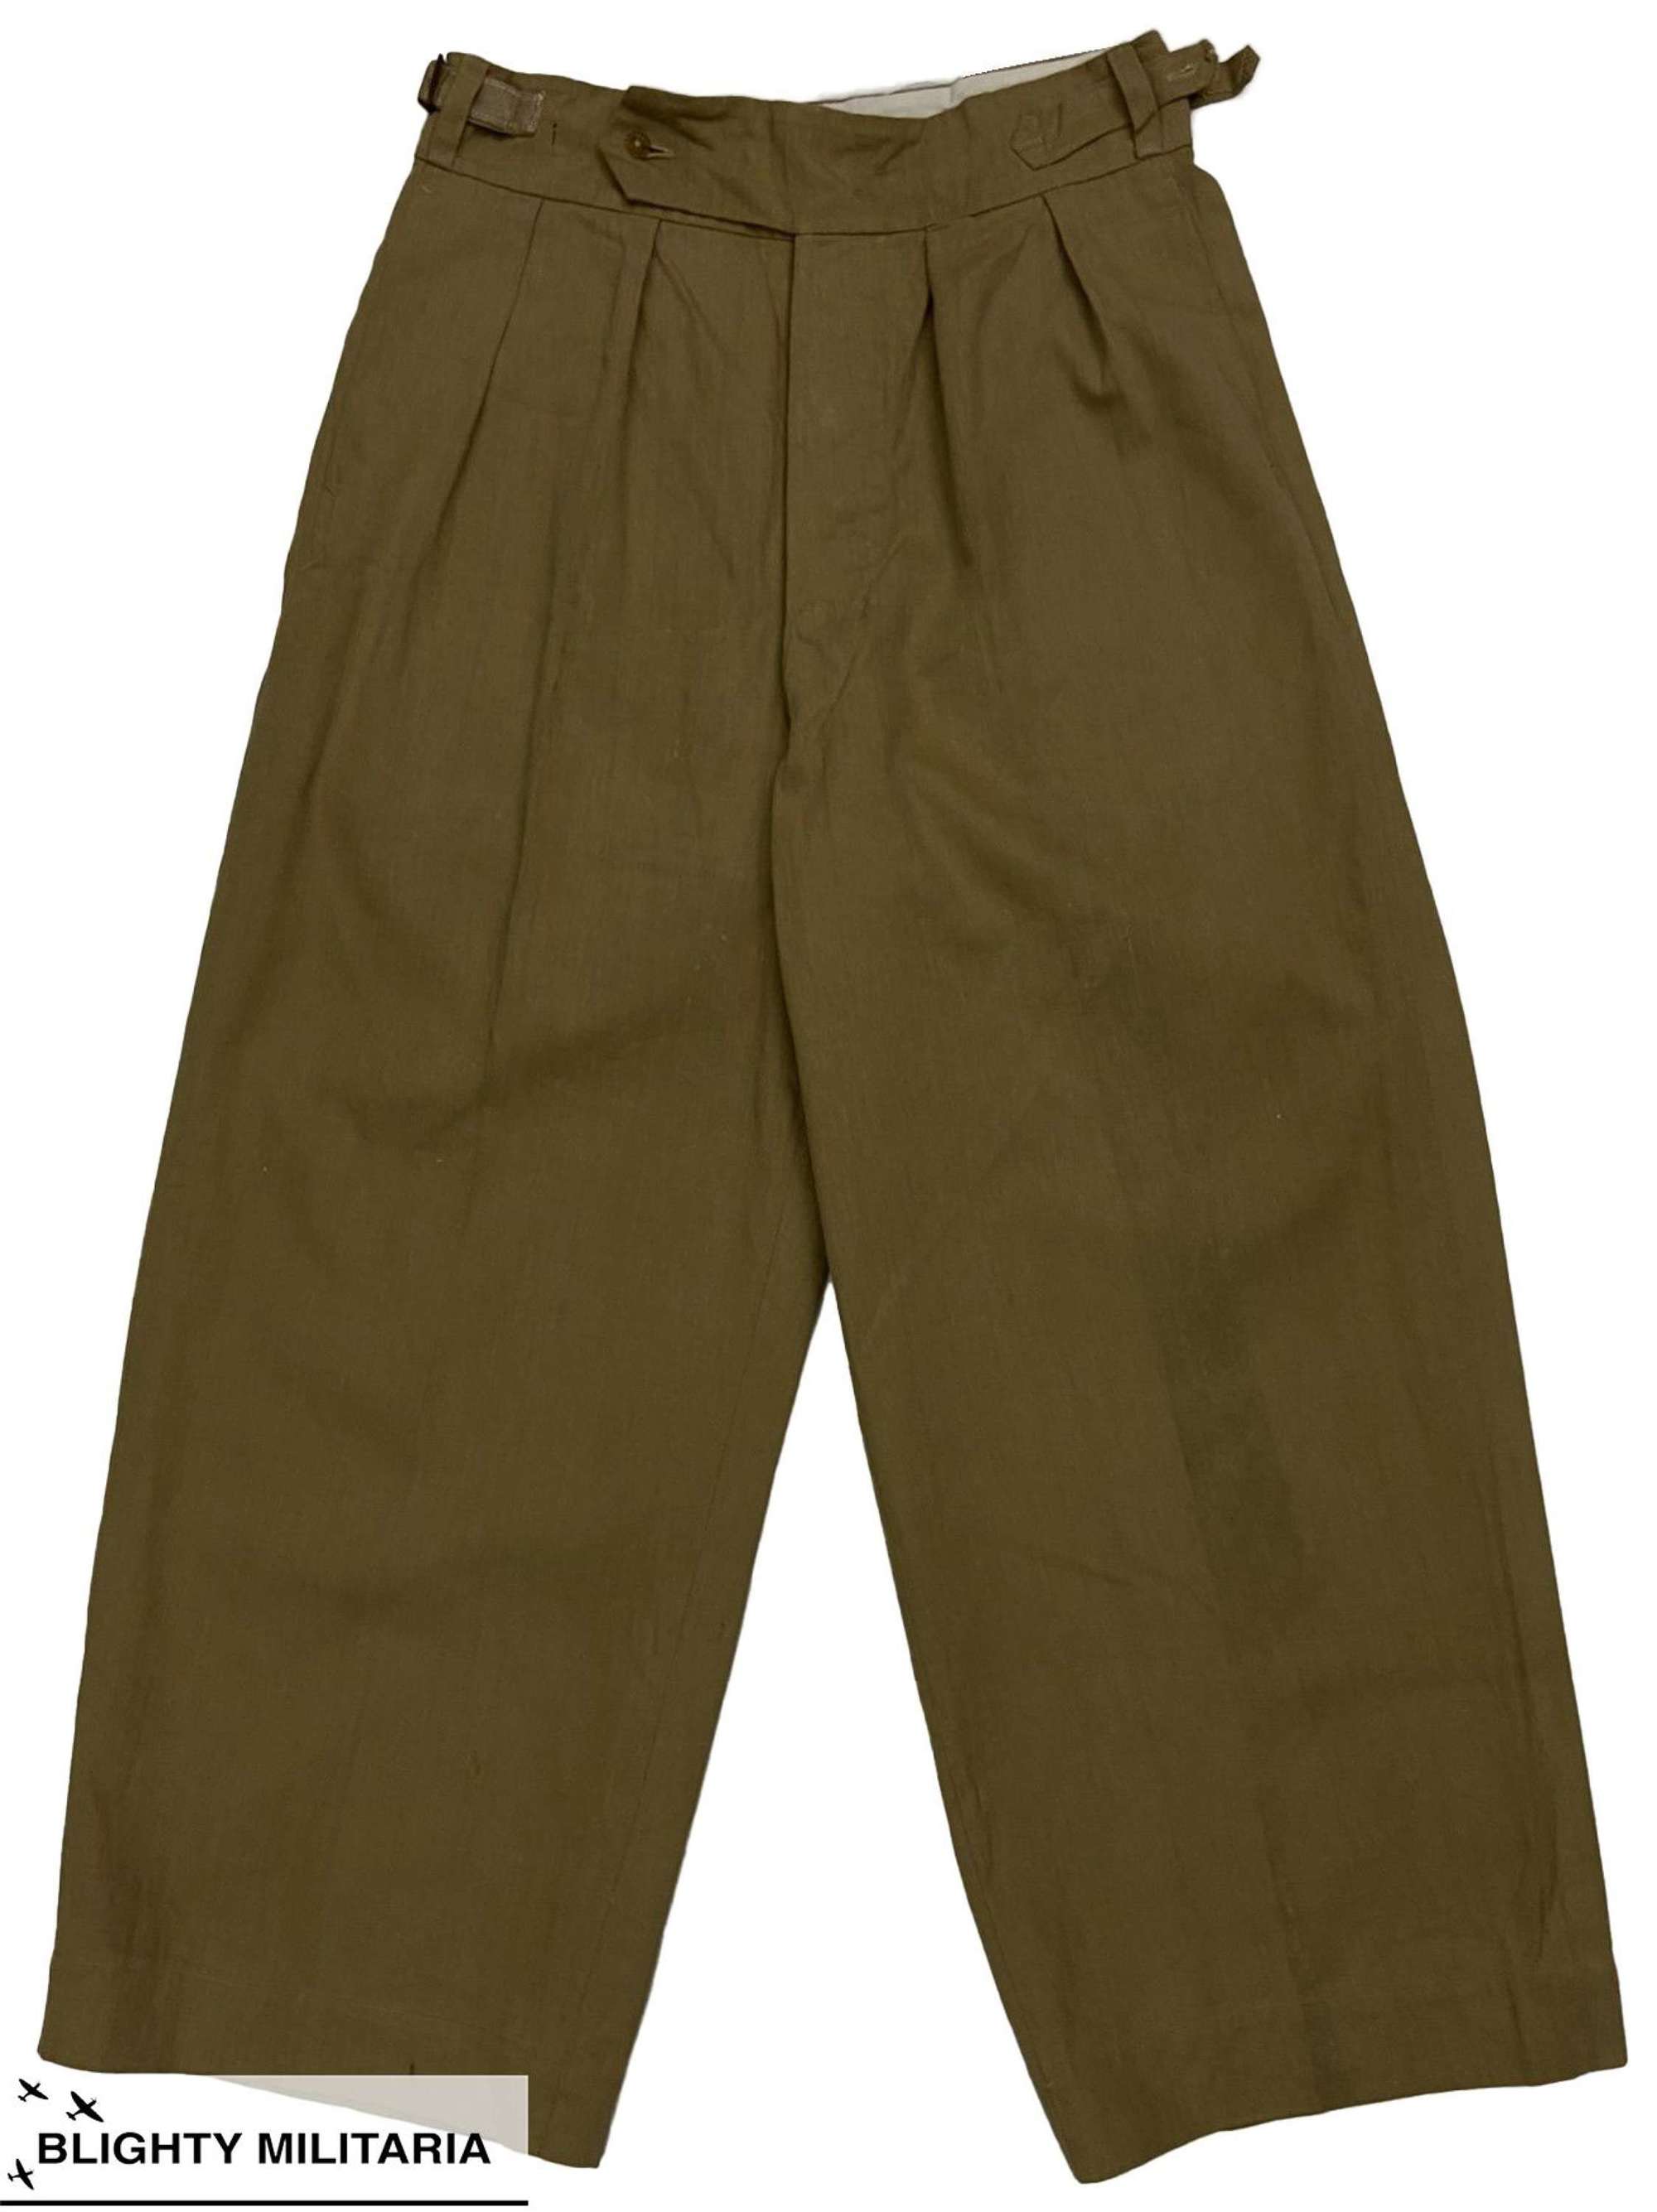 Original 1940s British Private Purchase Khaki Drill Trousers